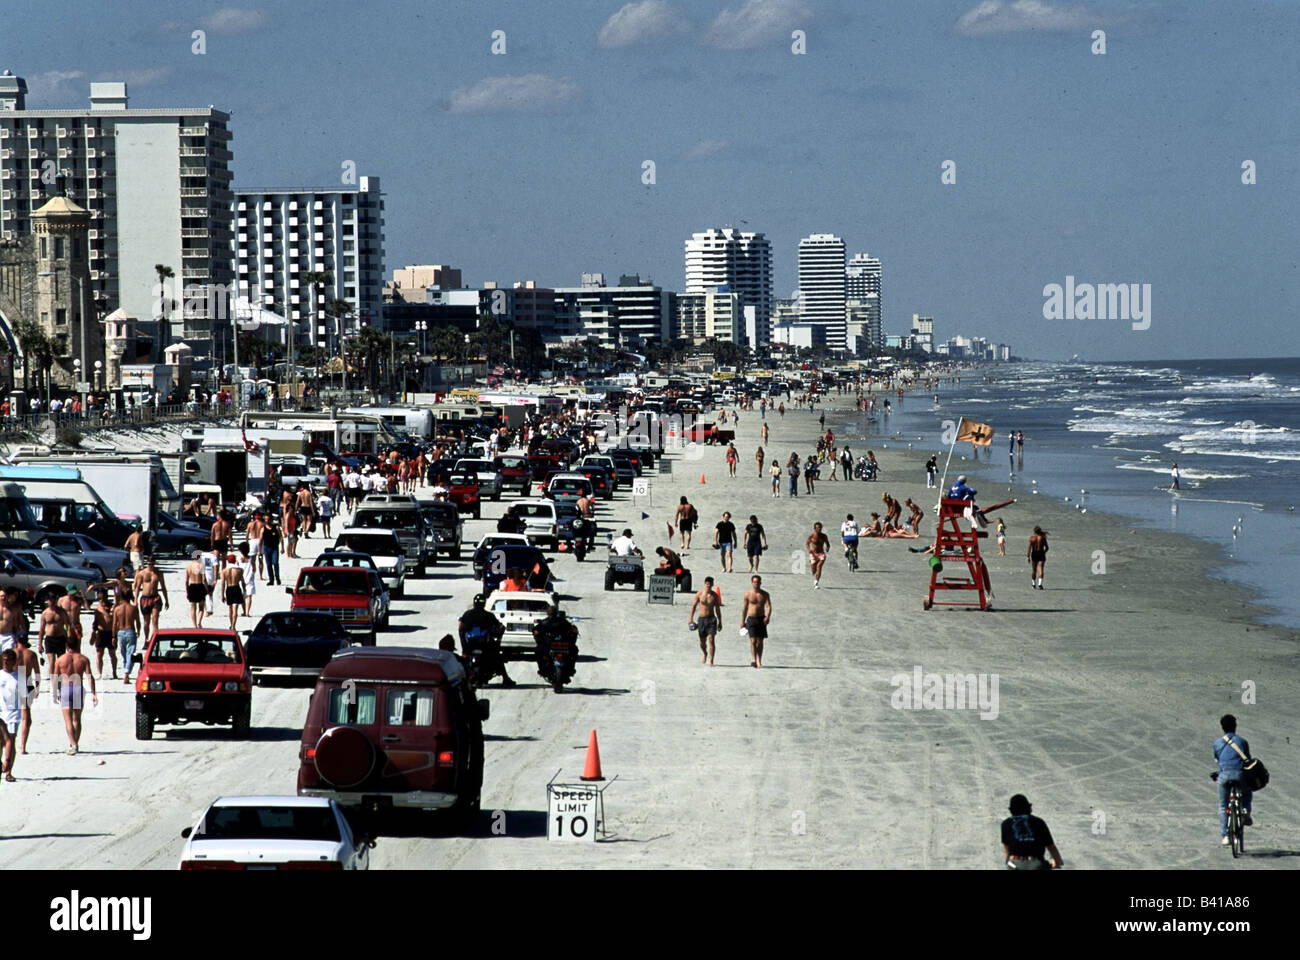 Geografia / viaggio, USA, Florida, Daytona Beach, auto, spiaggia, turisti, turismo di massa, vacanze, vacanze, vacanza, viaggi, Foto Stock